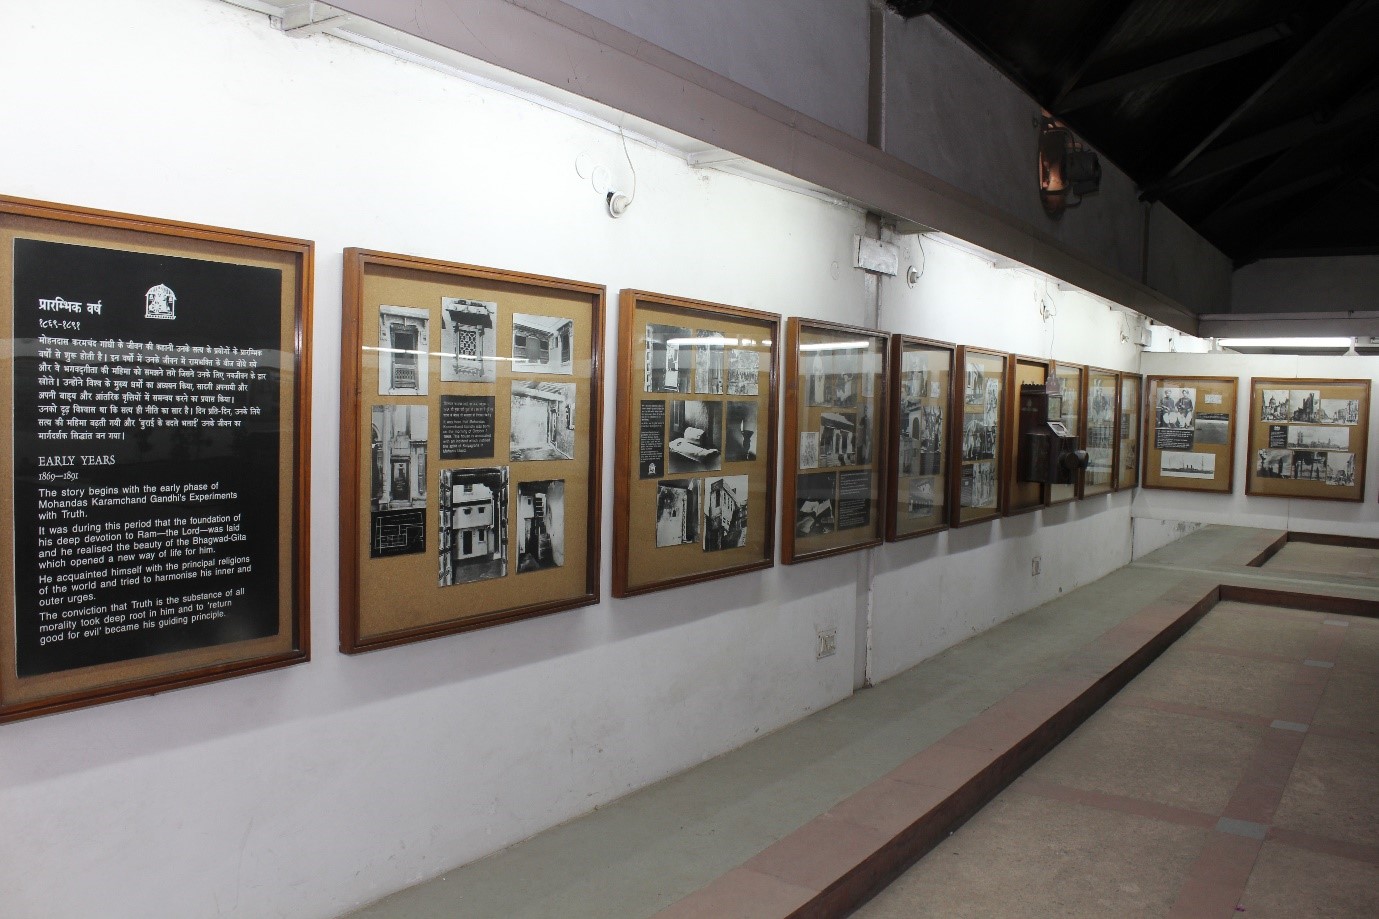 गांधी दर्शन मंडप में फोटो प्रदर्शनी का दृश्य